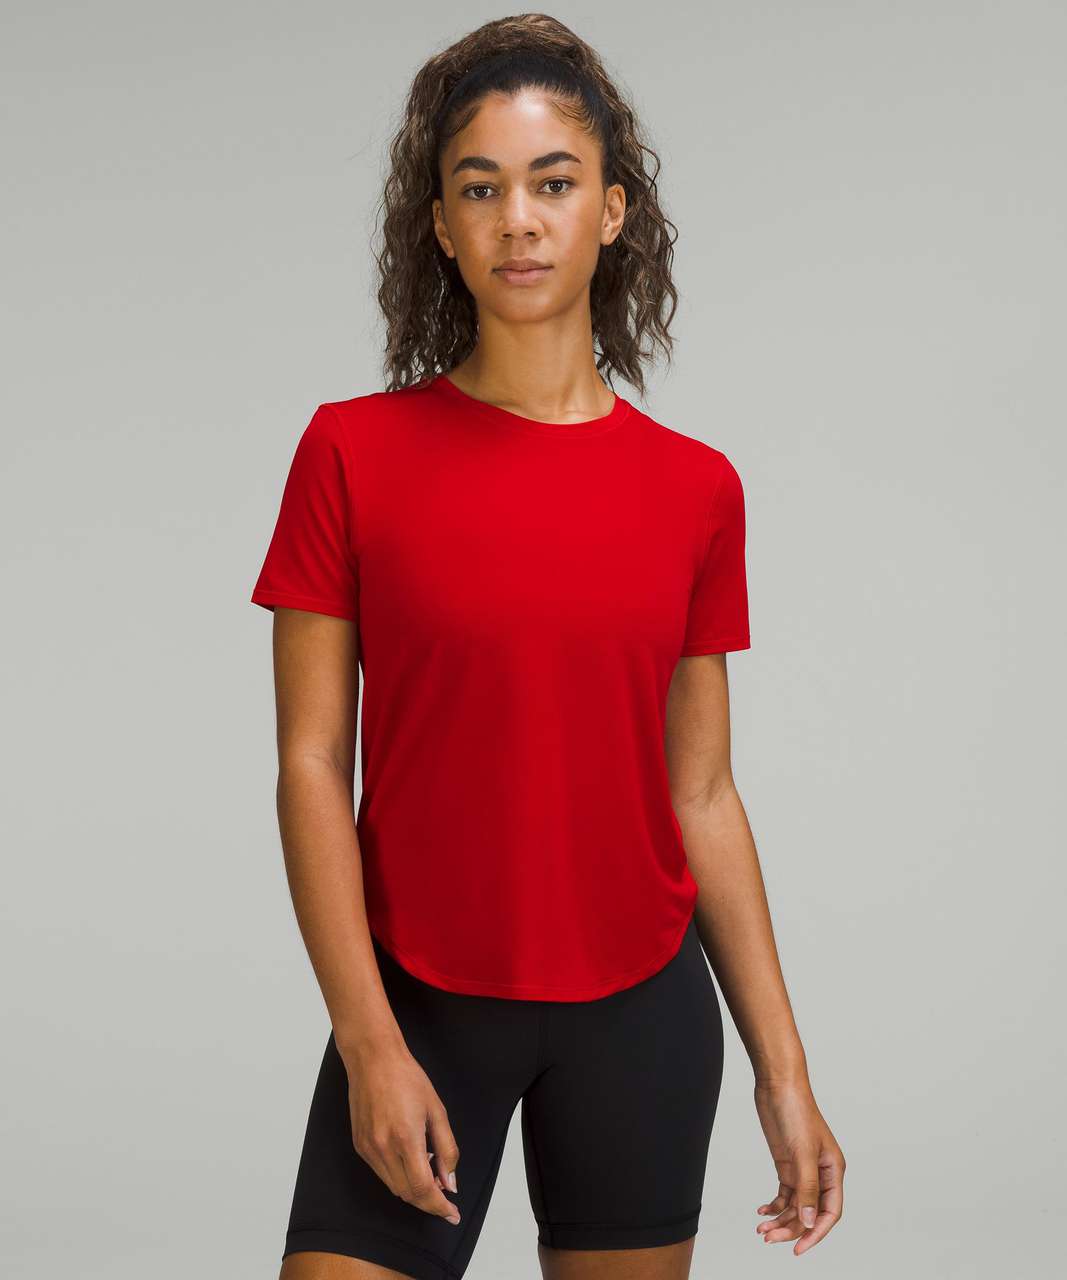 Lululemon High-Neck Running and Training T-Shirt - Dark Red